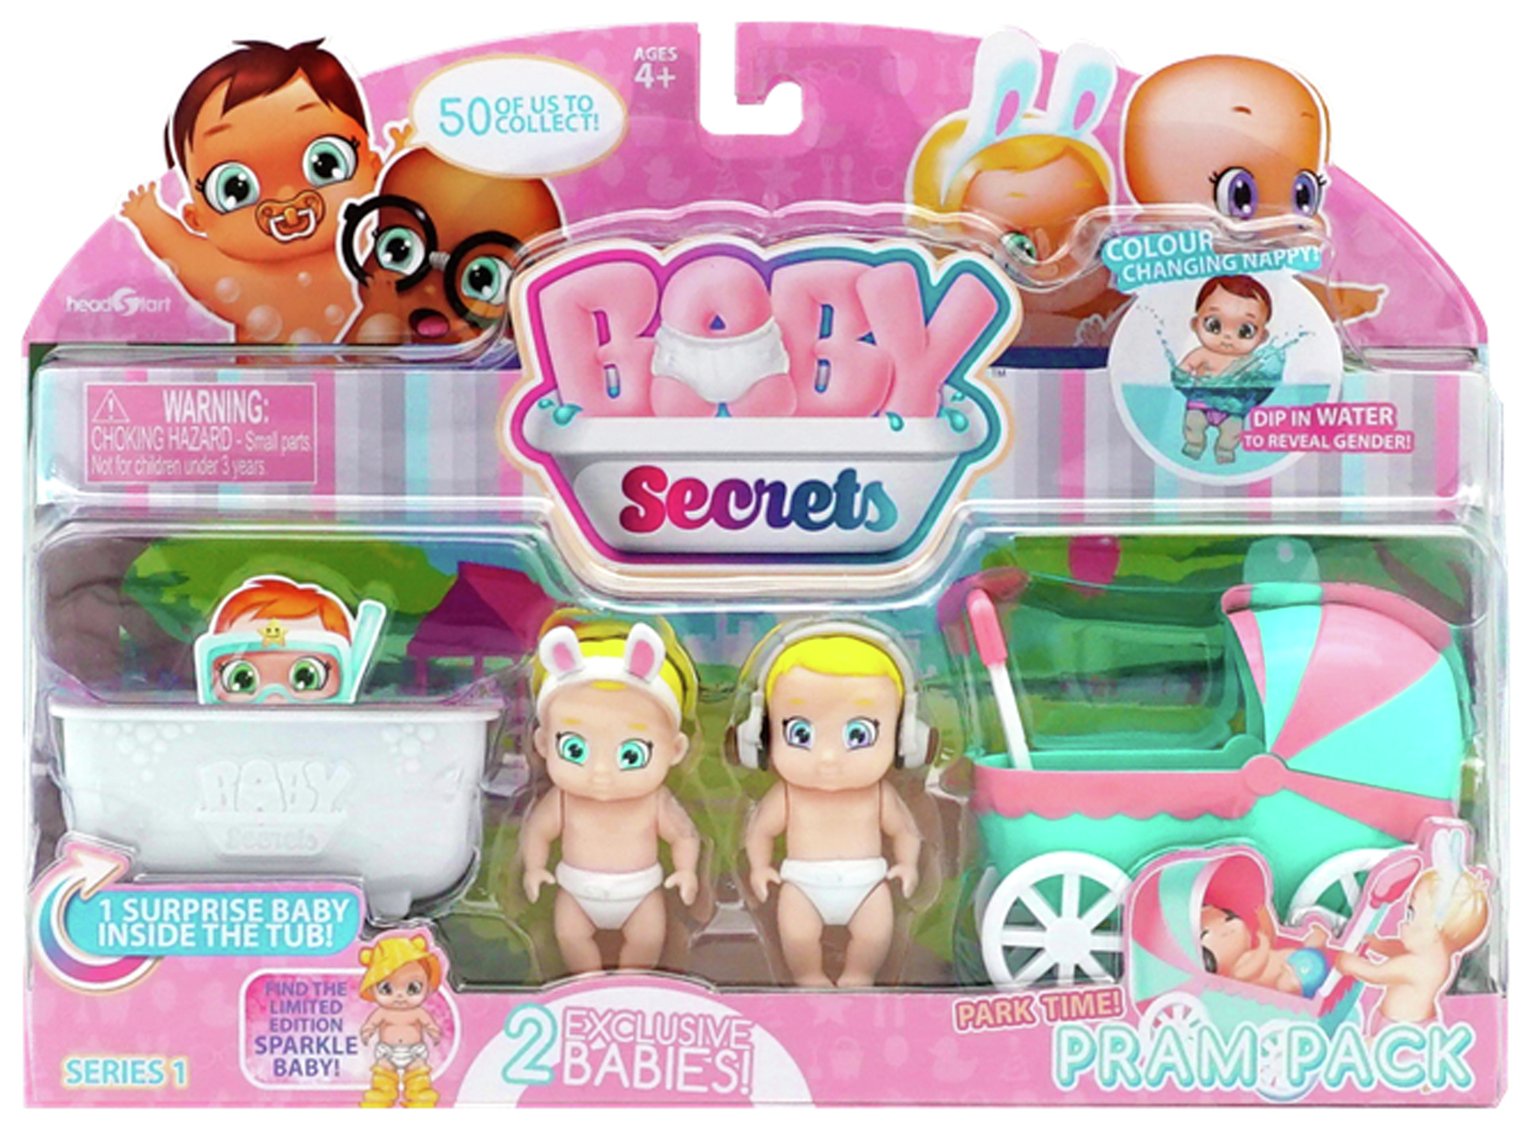 Résultat de recherche d'images pour "baby secret pram pack"